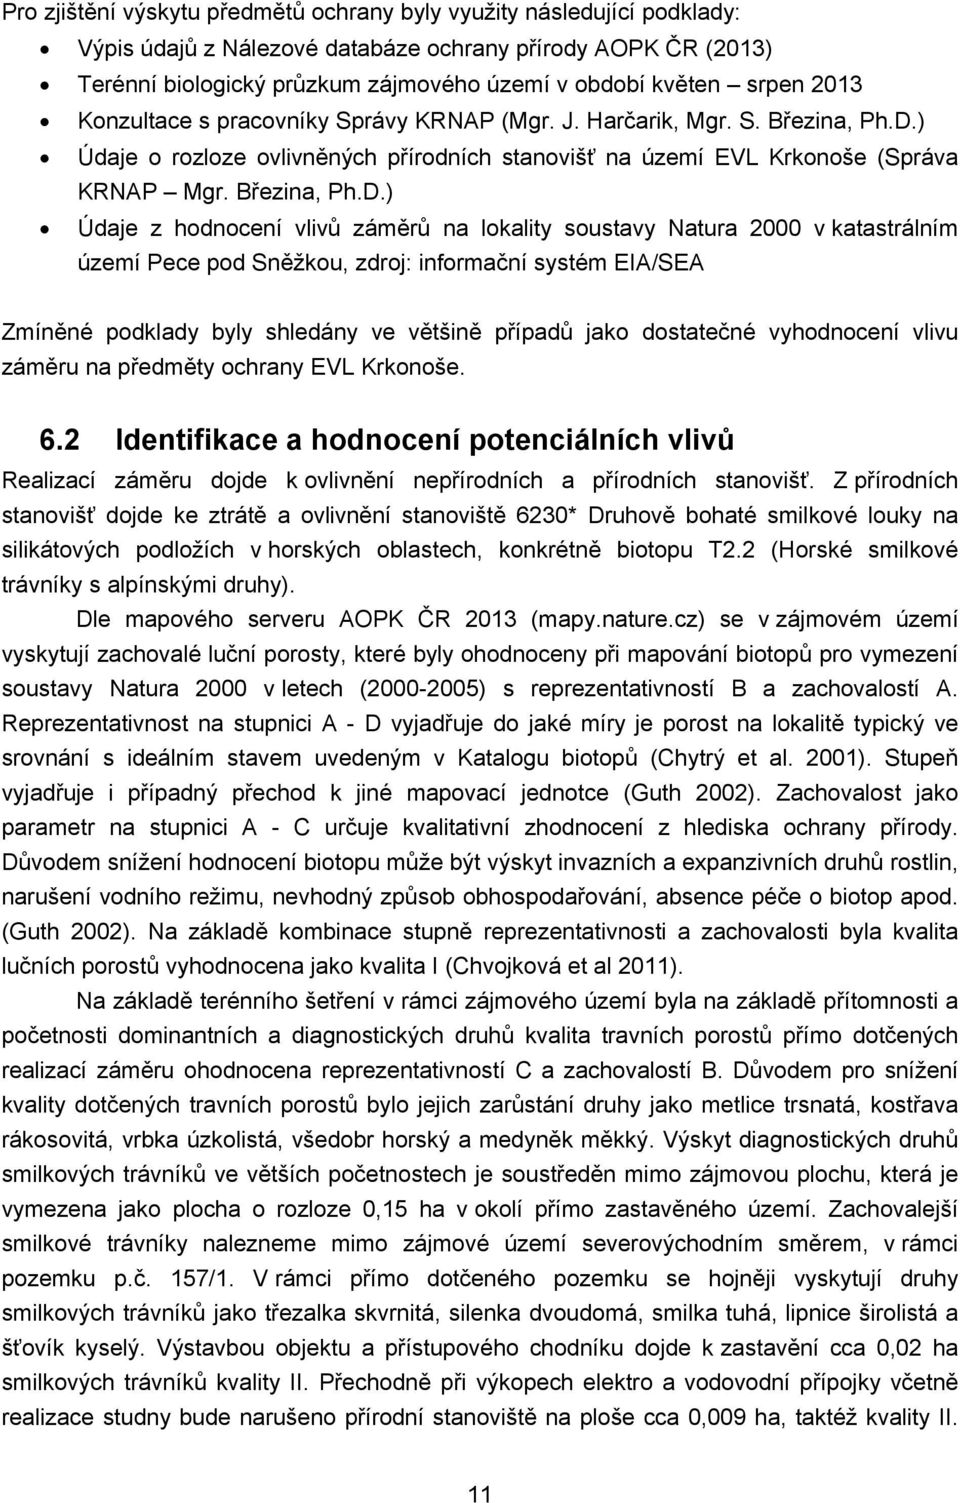 ) Údaje o rozloze ovlivněných přírodních stanovišť na území EVL Krkonoše (Správa KRNAP Mgr. Březina, Ph.D.